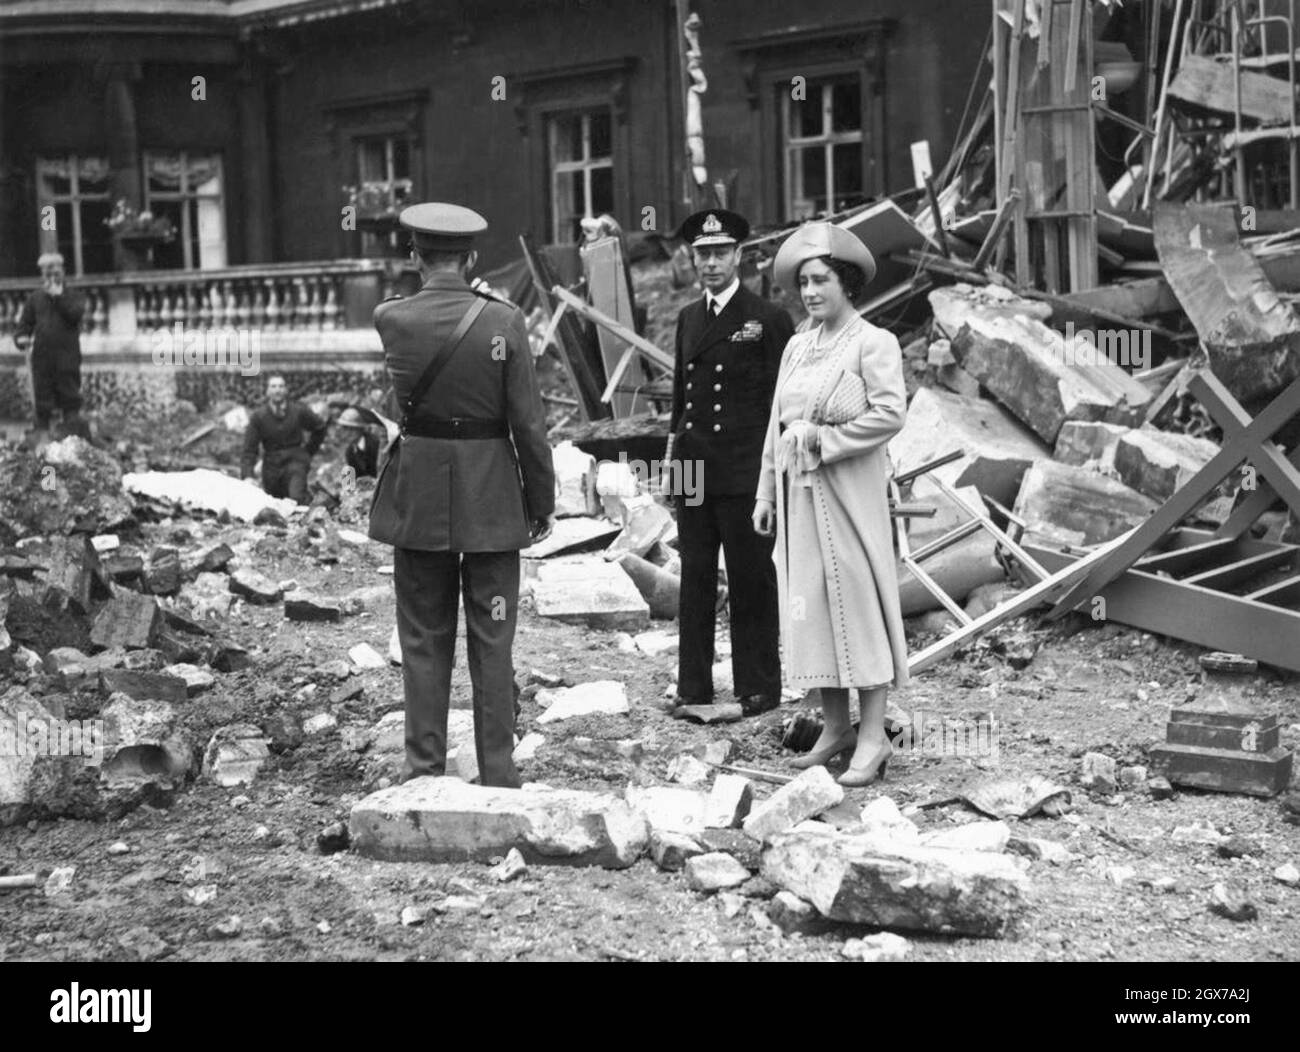 Le roi George VI et la reine Elizabeth (la reine mère) ont examiné les dommages causés au palais de Buckingham lors du blitz de Londres en 1940 Banque D'Images